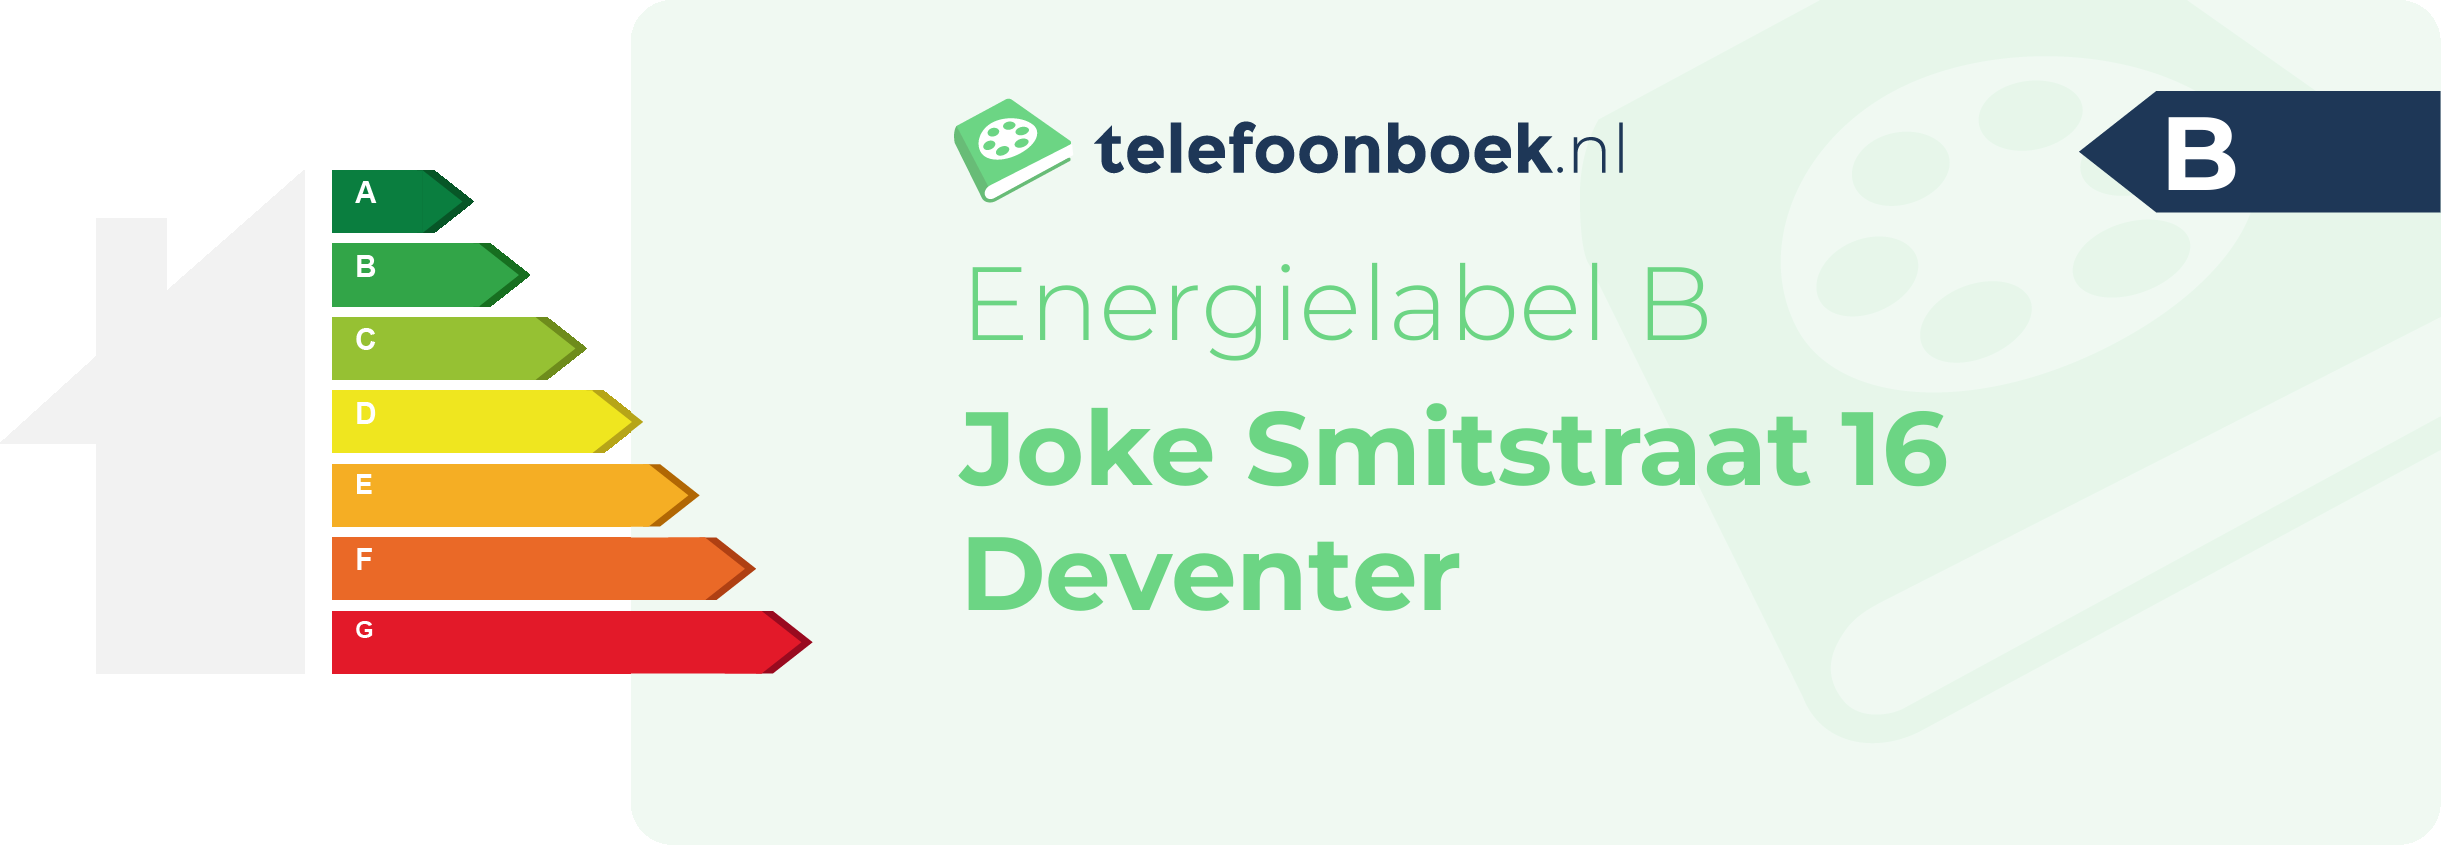 Energielabel Joke Smitstraat 16 Deventer